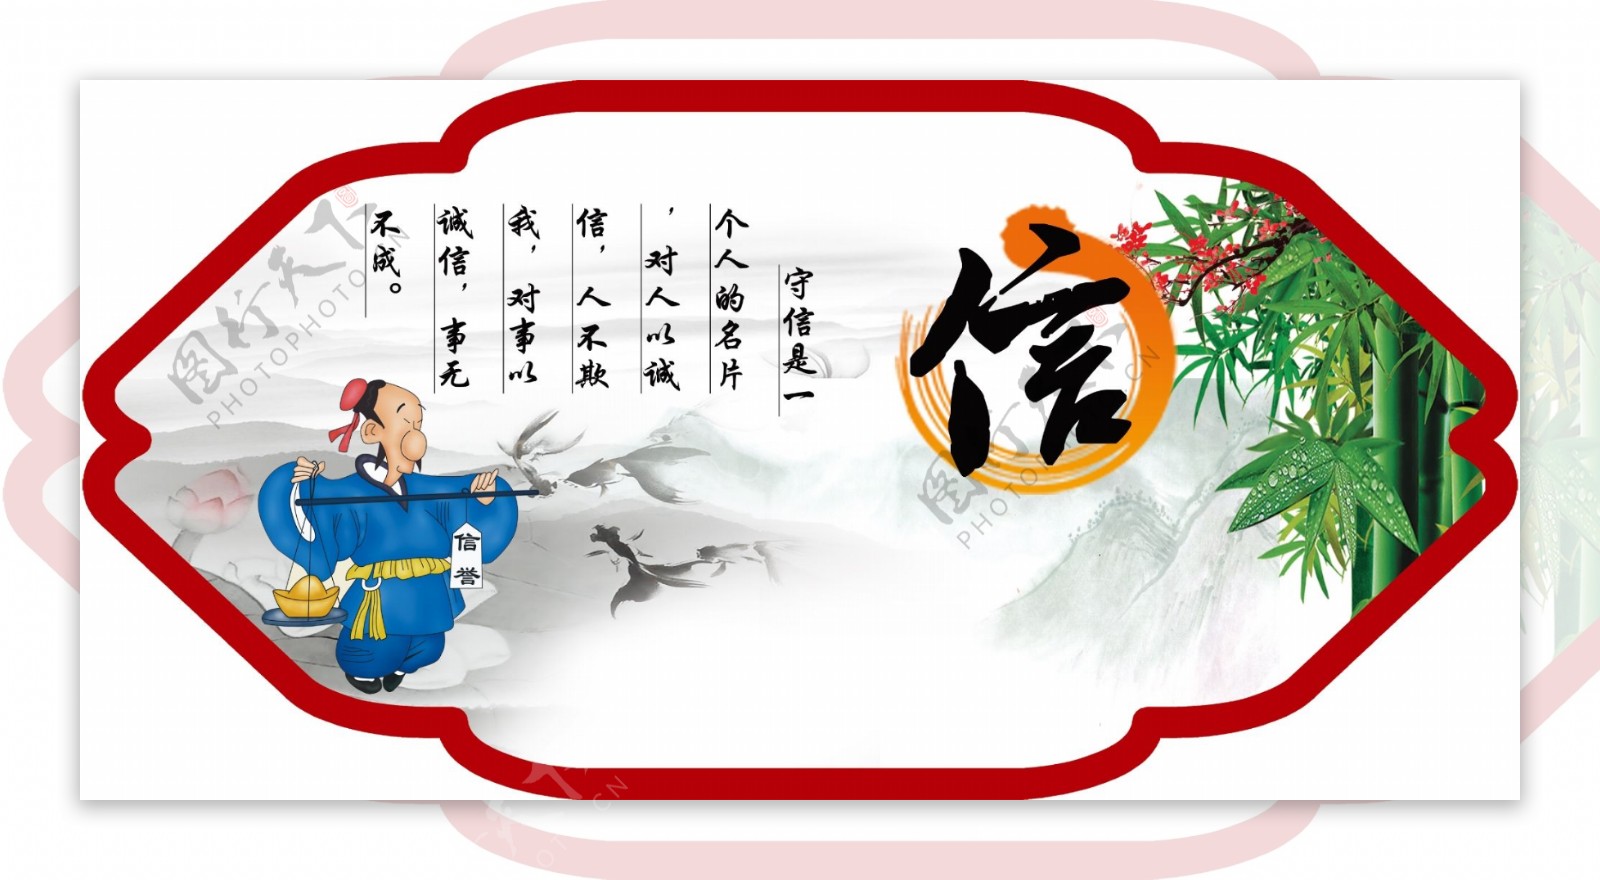 字文化中华传统美德之信